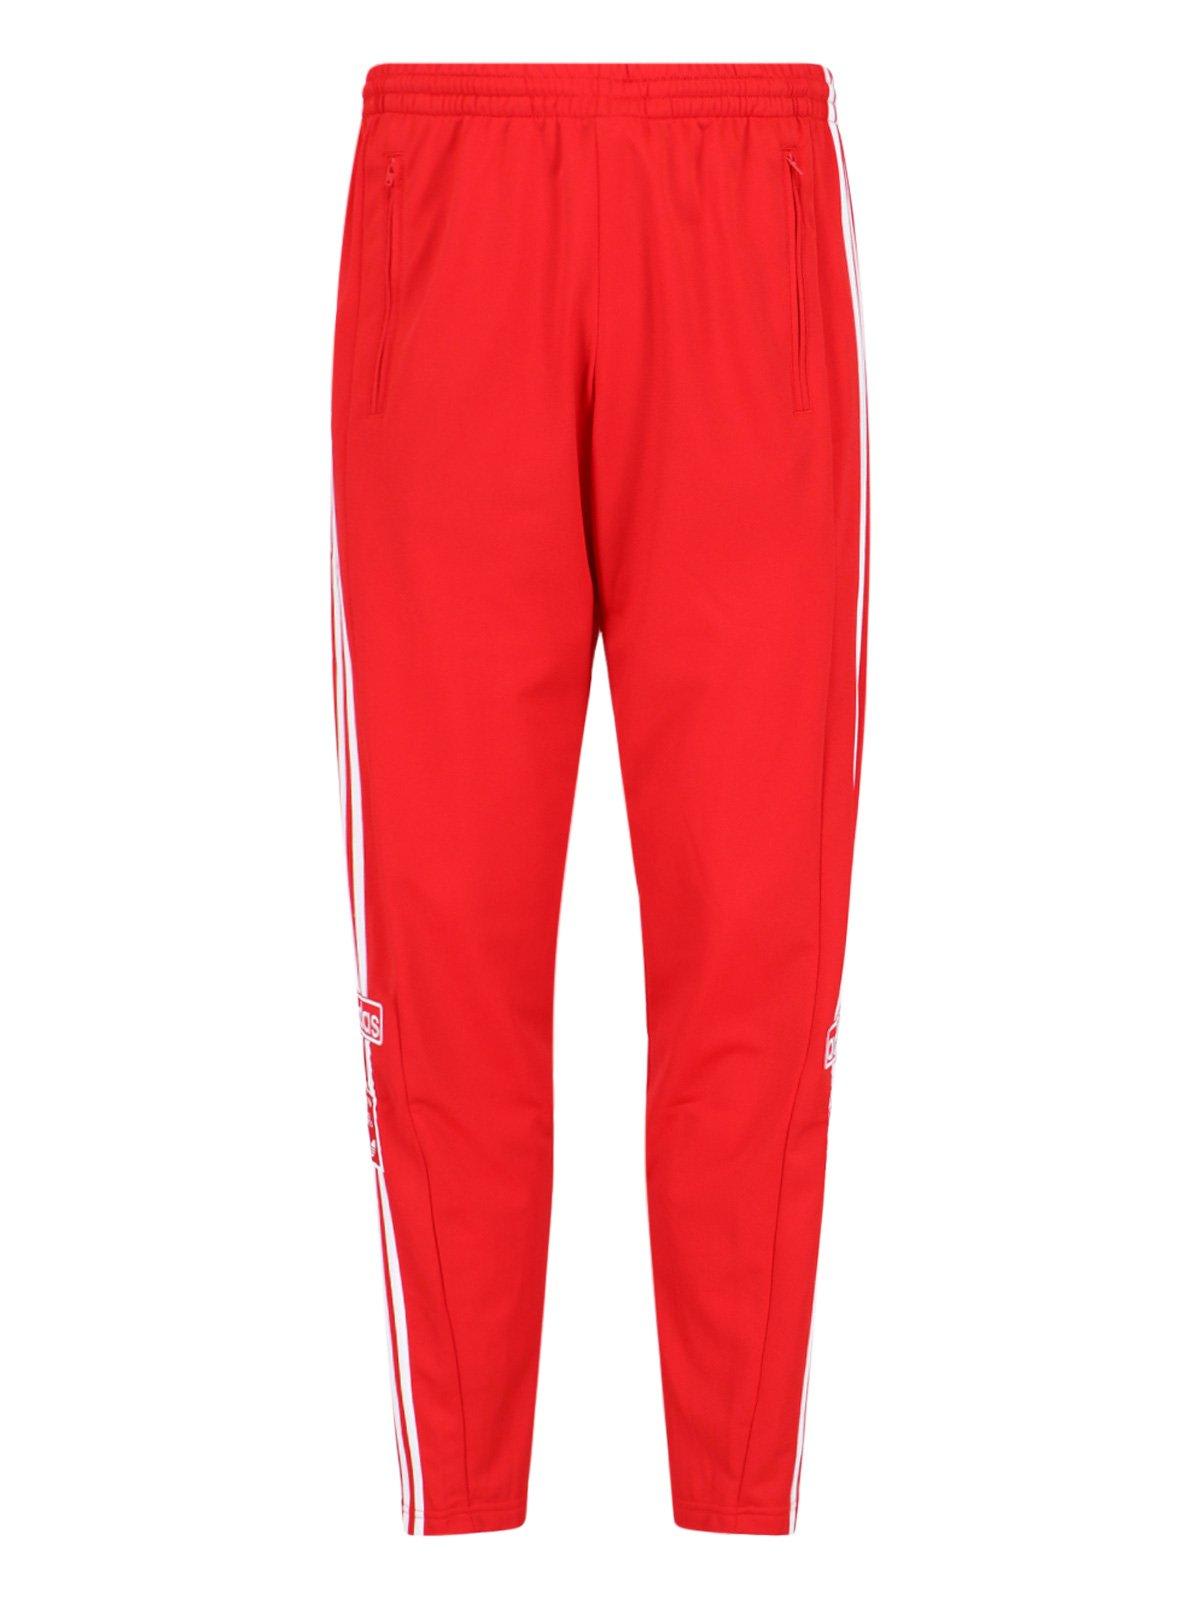 Adidas Originals Pant Adidas In Red